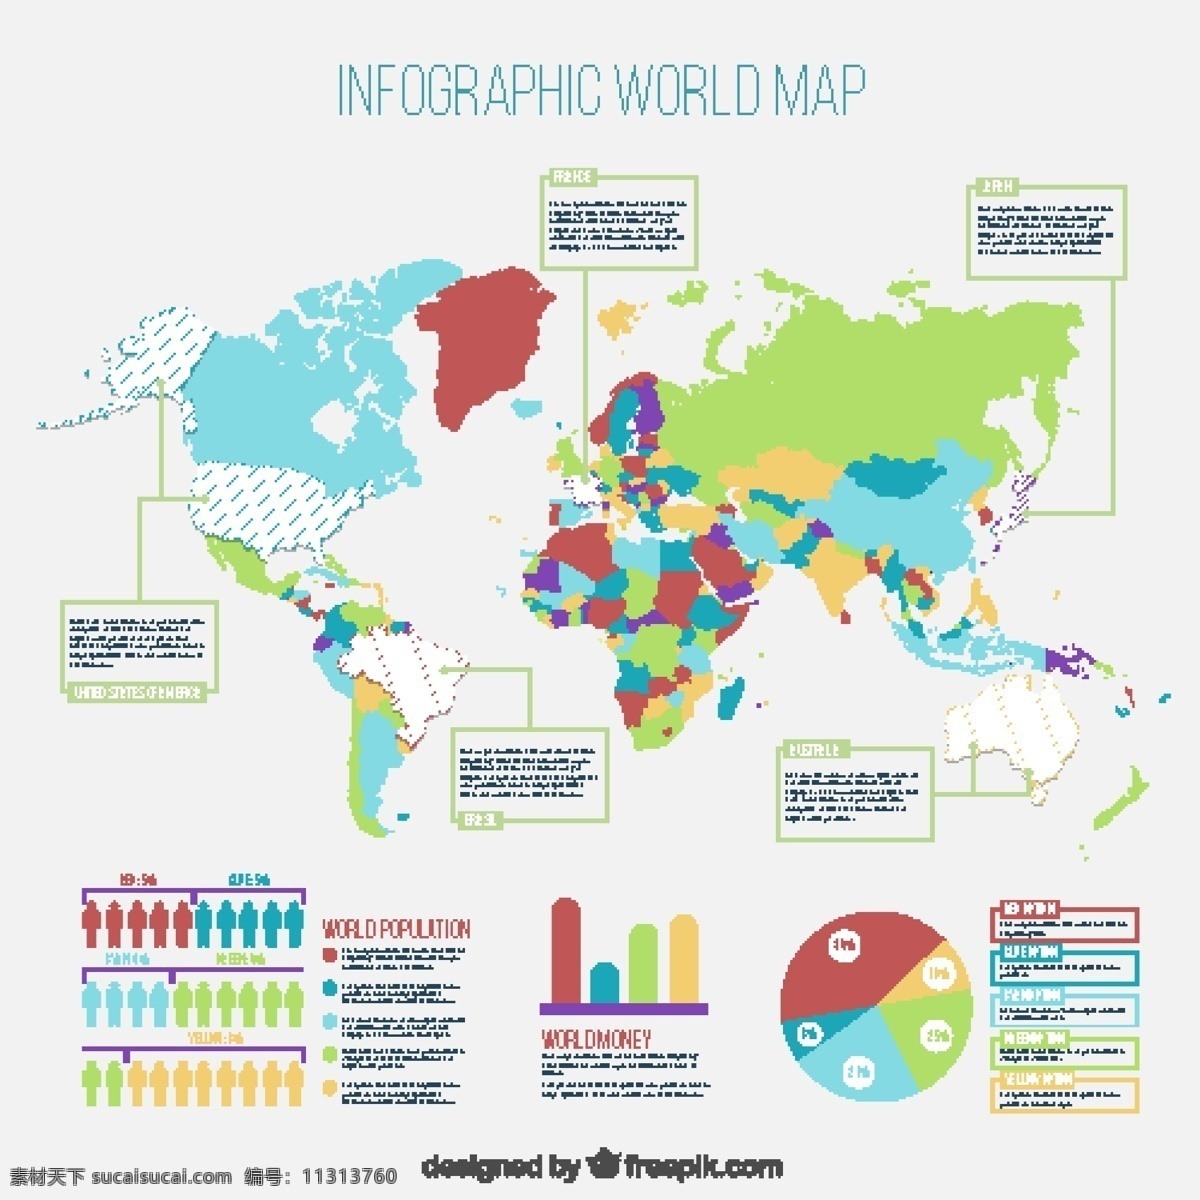 世界地图图表 图表 旅行 模板 地图 世界 世界地图 地球 营销 图 过程 图表模板 数据 现代 海洋 信息 地球信息 非洲